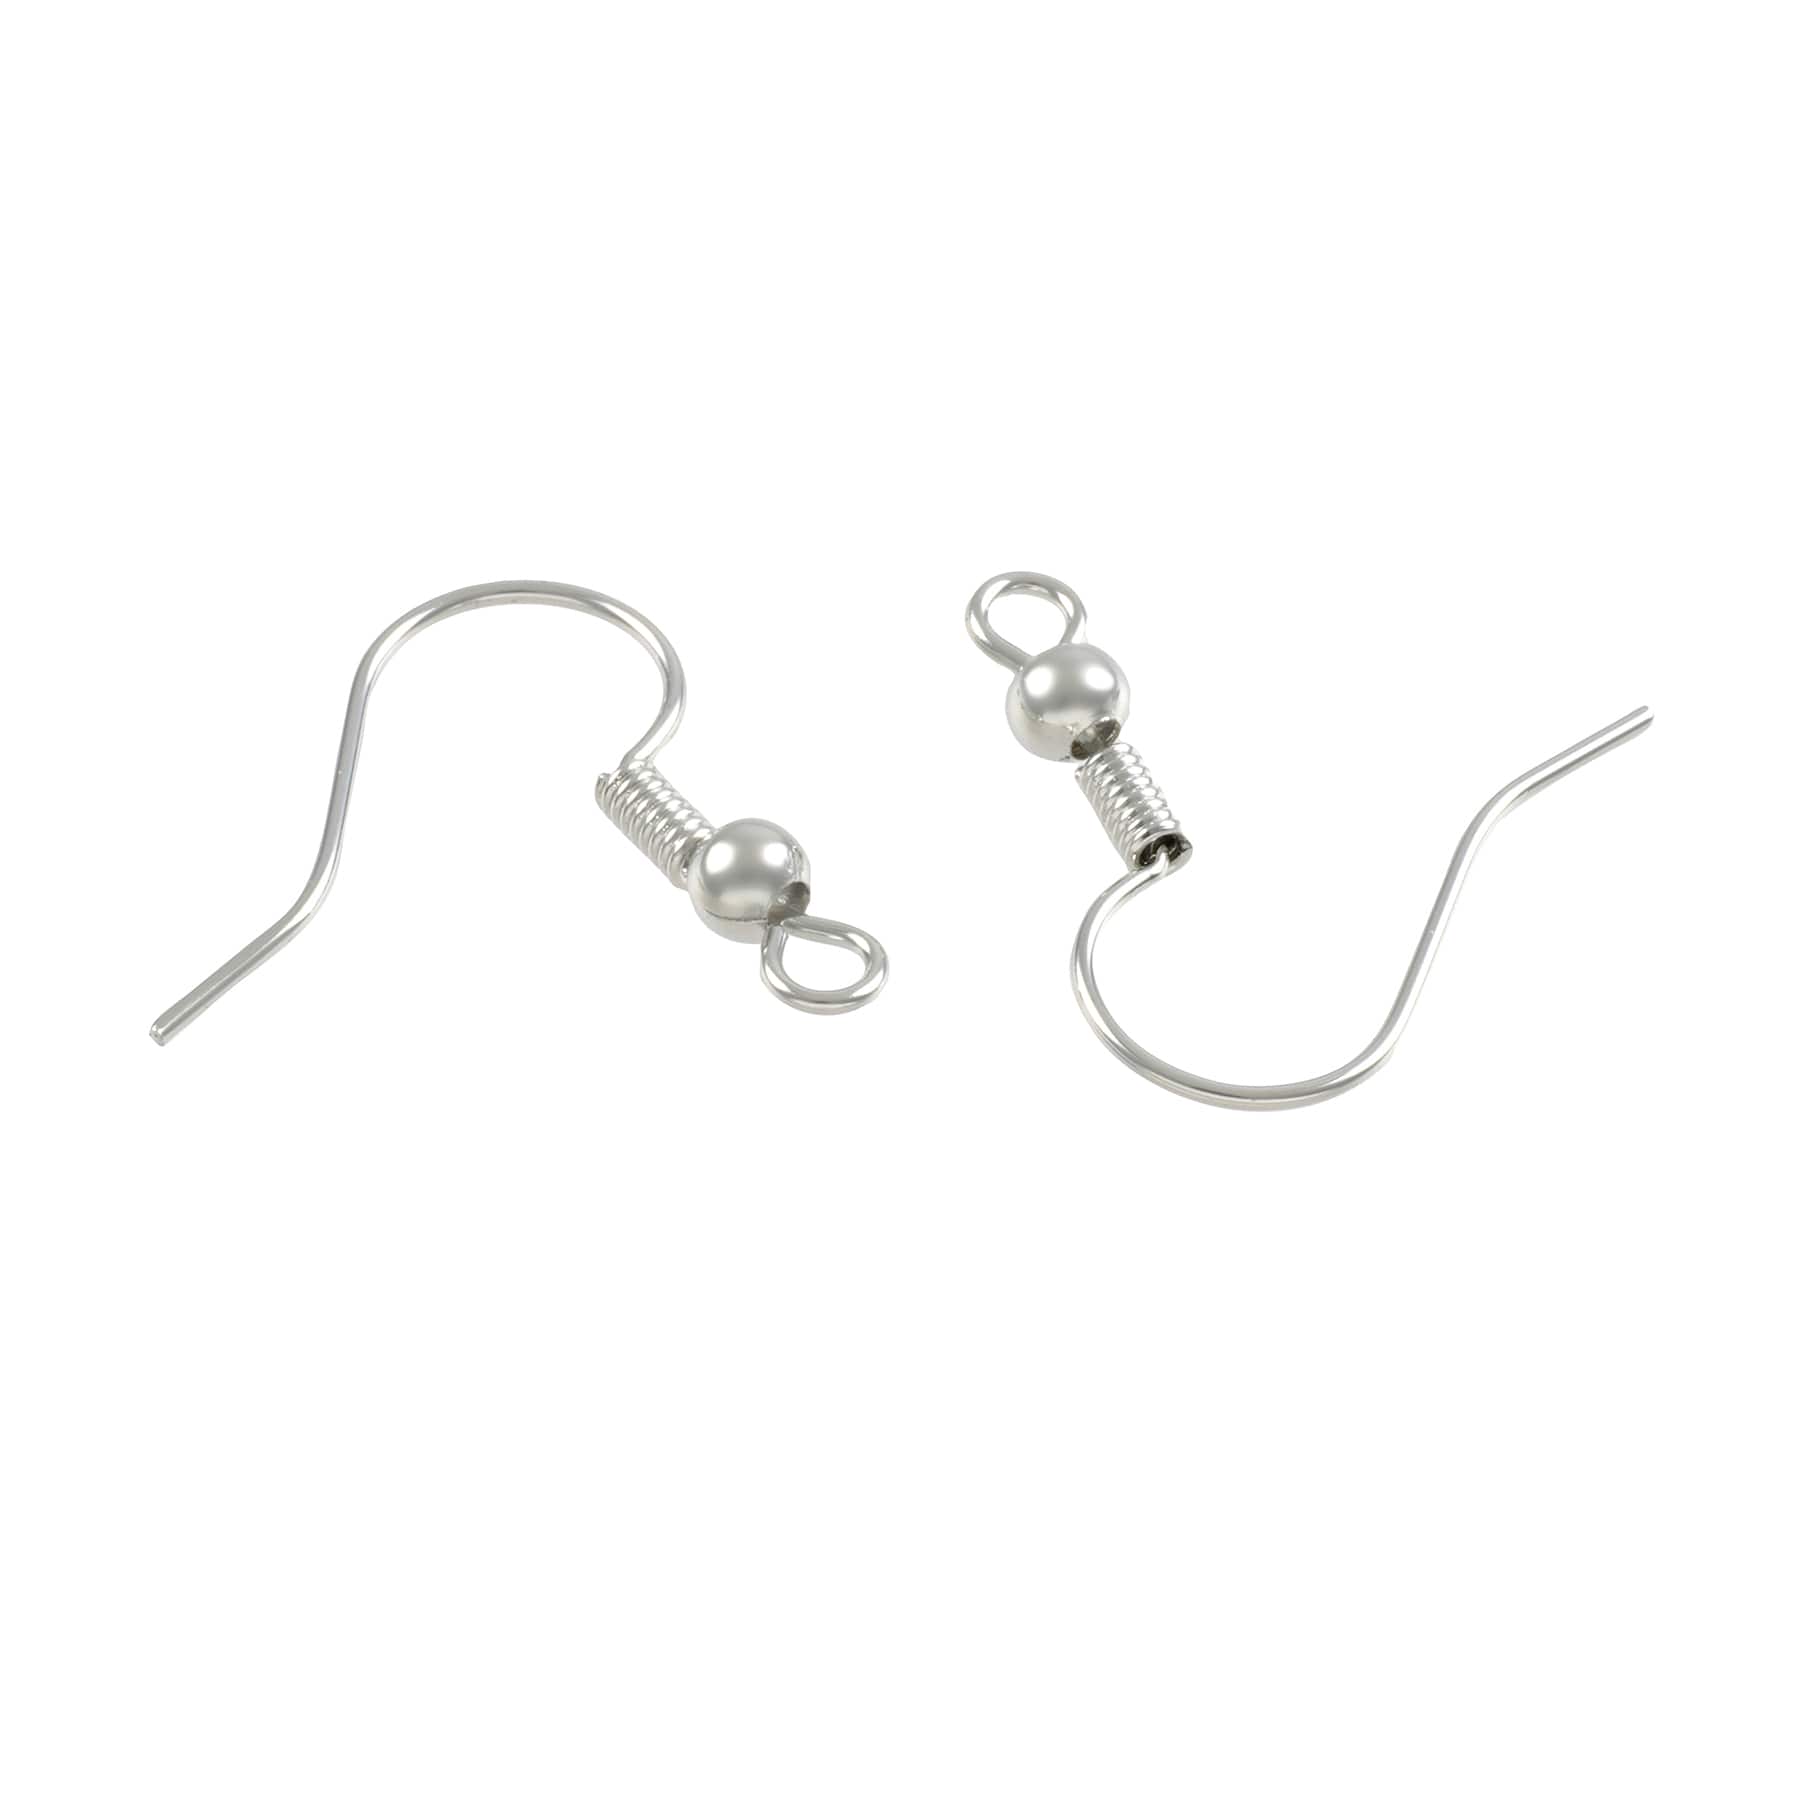 Buy in Bulk - 9 Pack: Rhodium Fish Hook Earwires by Bead Landing